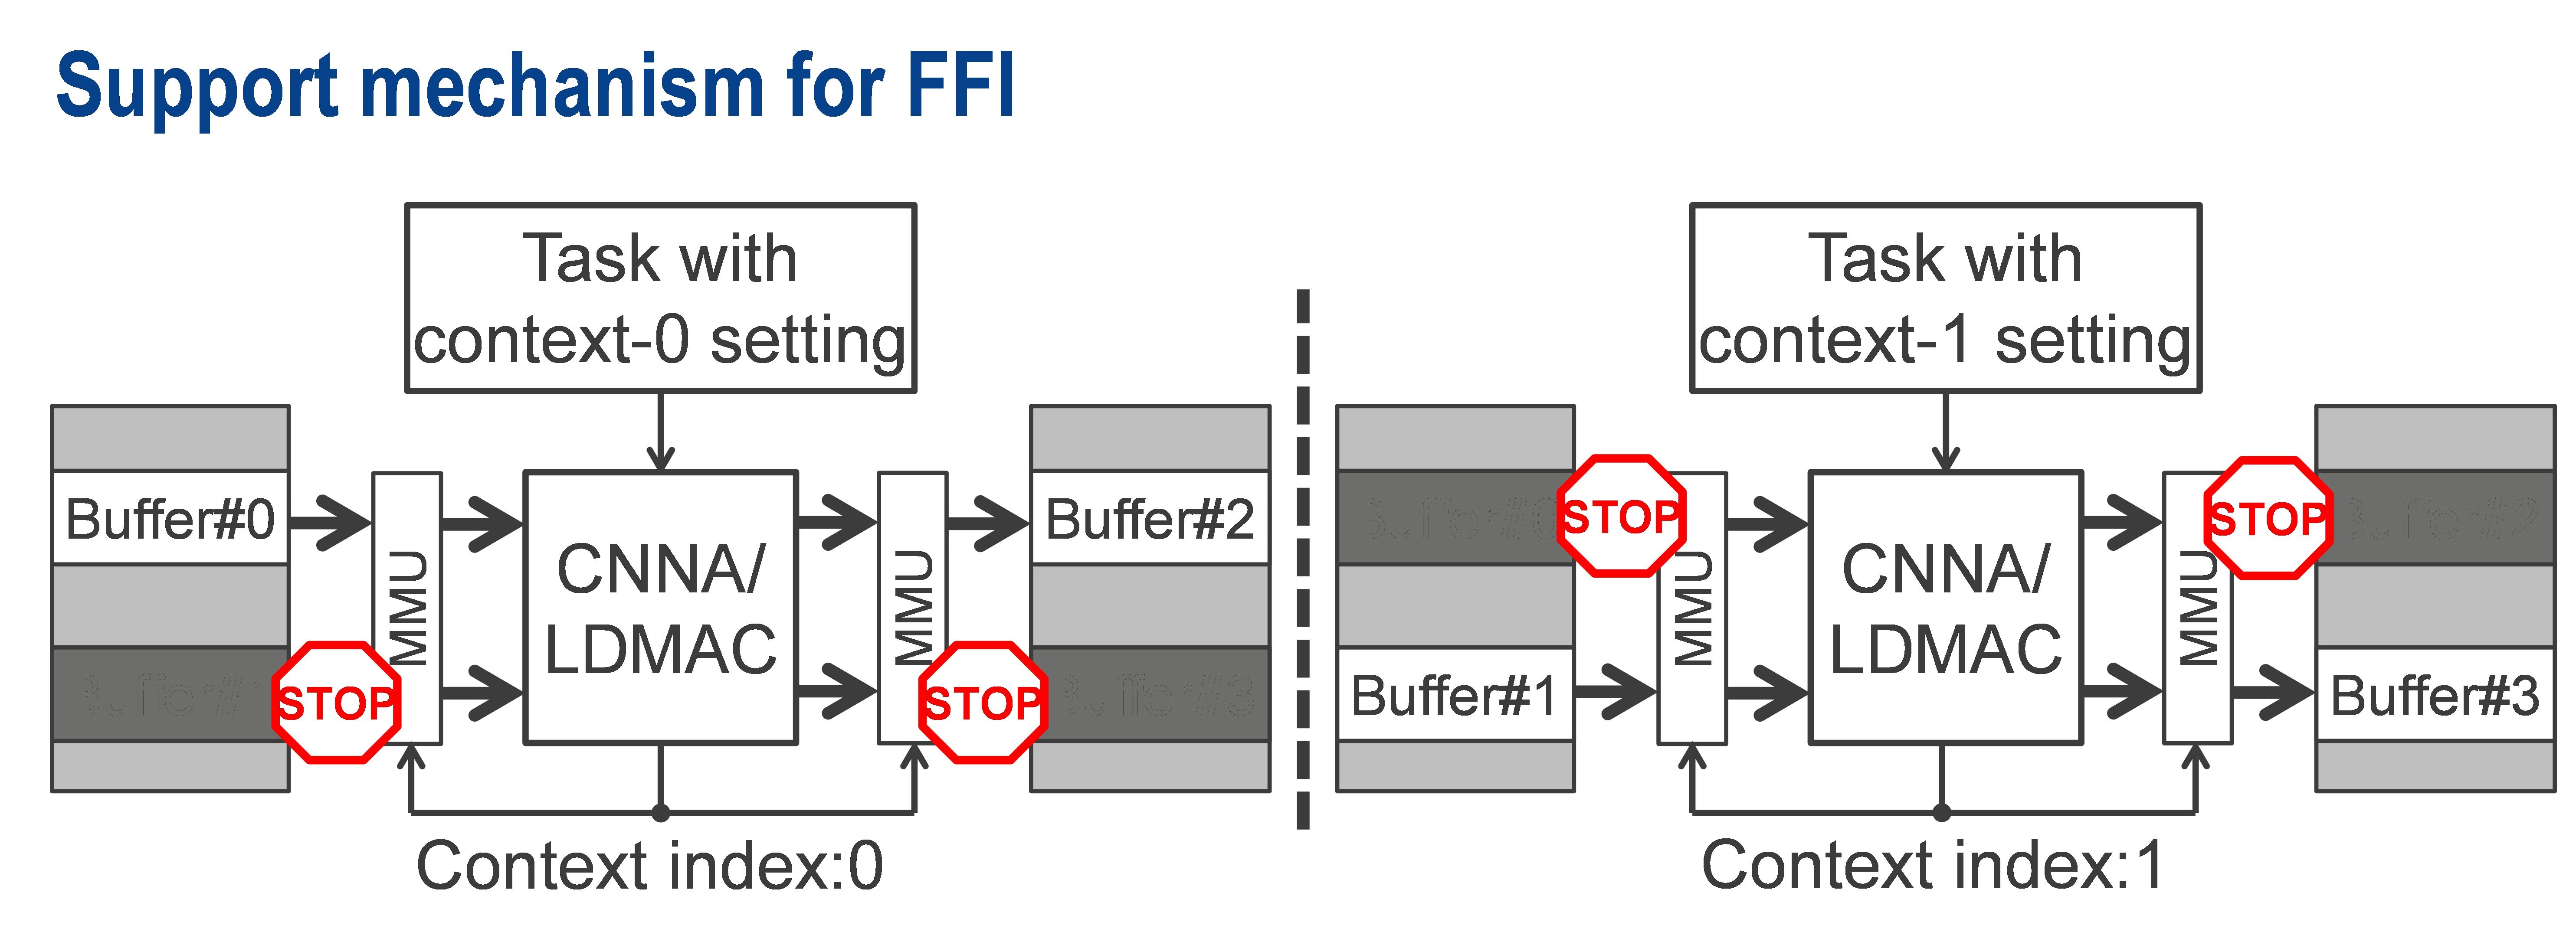 support-mechanism-ffi